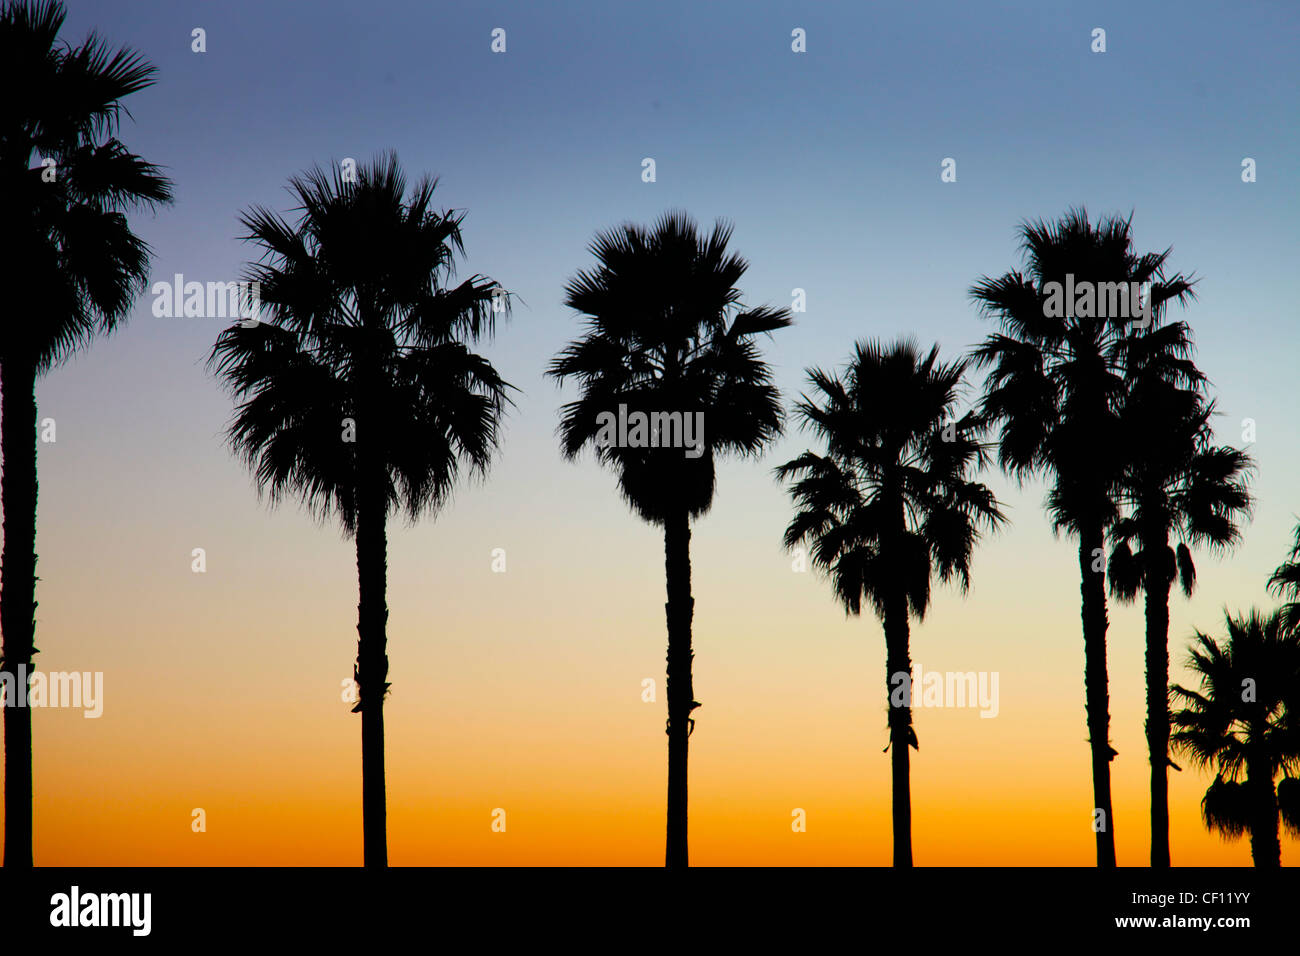 PALM TREES, KALIFORNIEN, USA Stockfoto